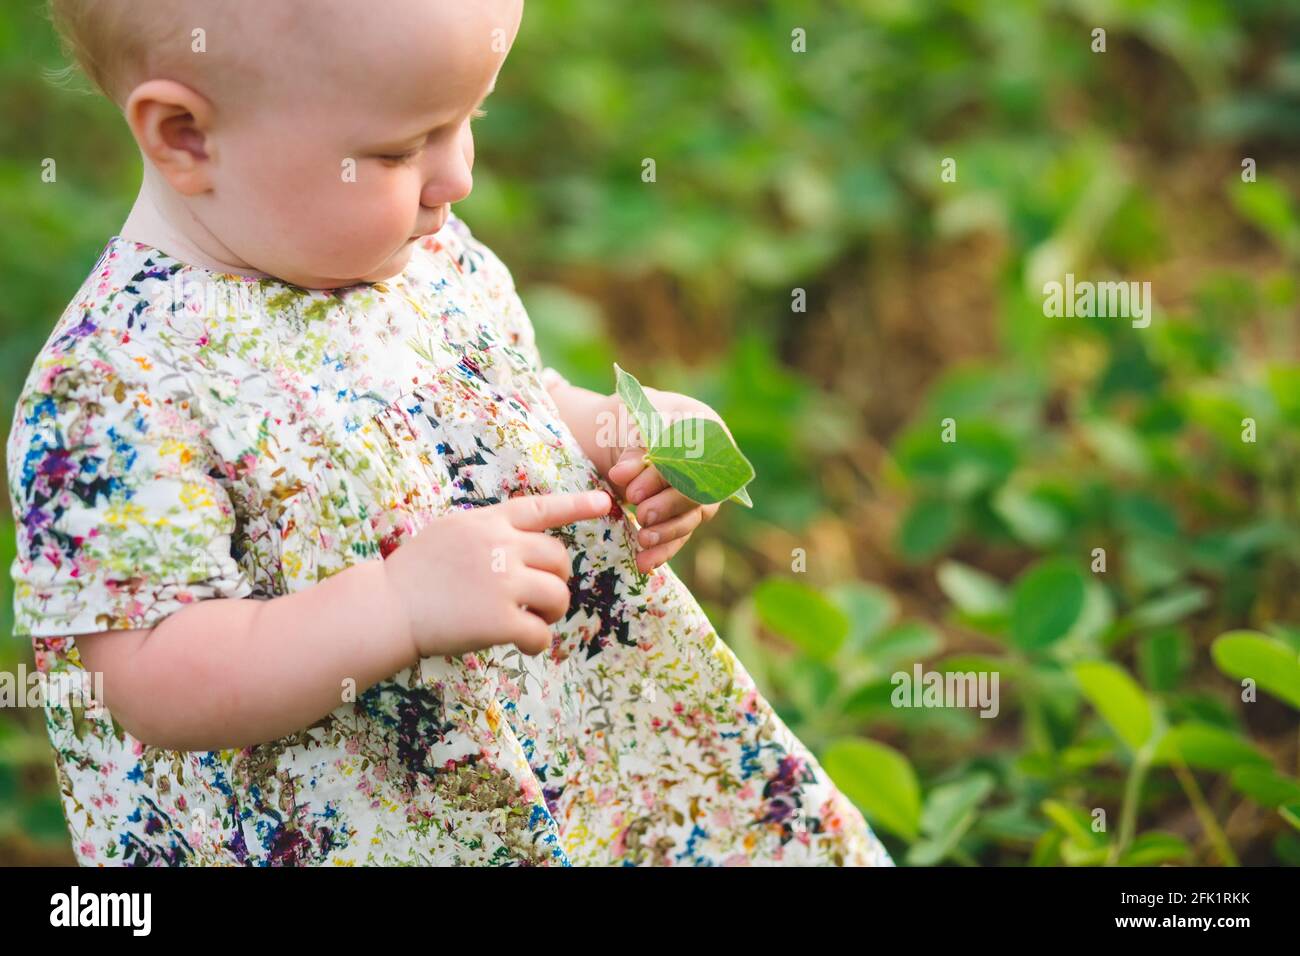 Kleines Mädchen in einem Kleid zeigt Finger auf Sojabohnen sprießen in den Händen. Glycin max, Sojabohnen, Sojabohnen sprießen Sojabohnen wachsen in der Skala. Landwirtschaftliche Soja pla Stockfoto